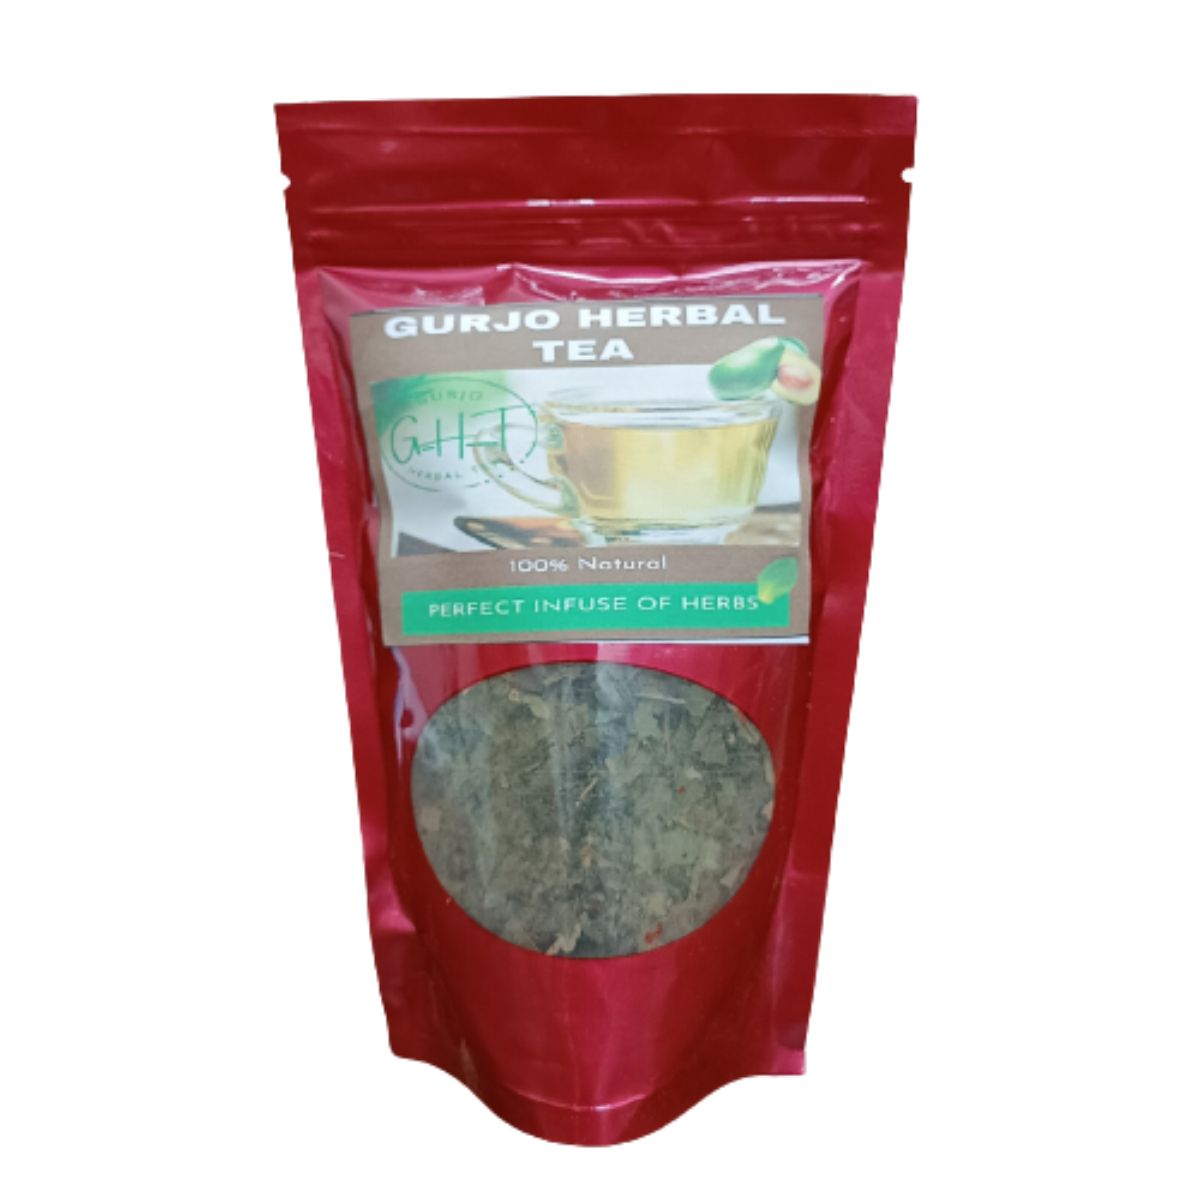 Gurjo Herbal Tea - Avocado Tea - 50g